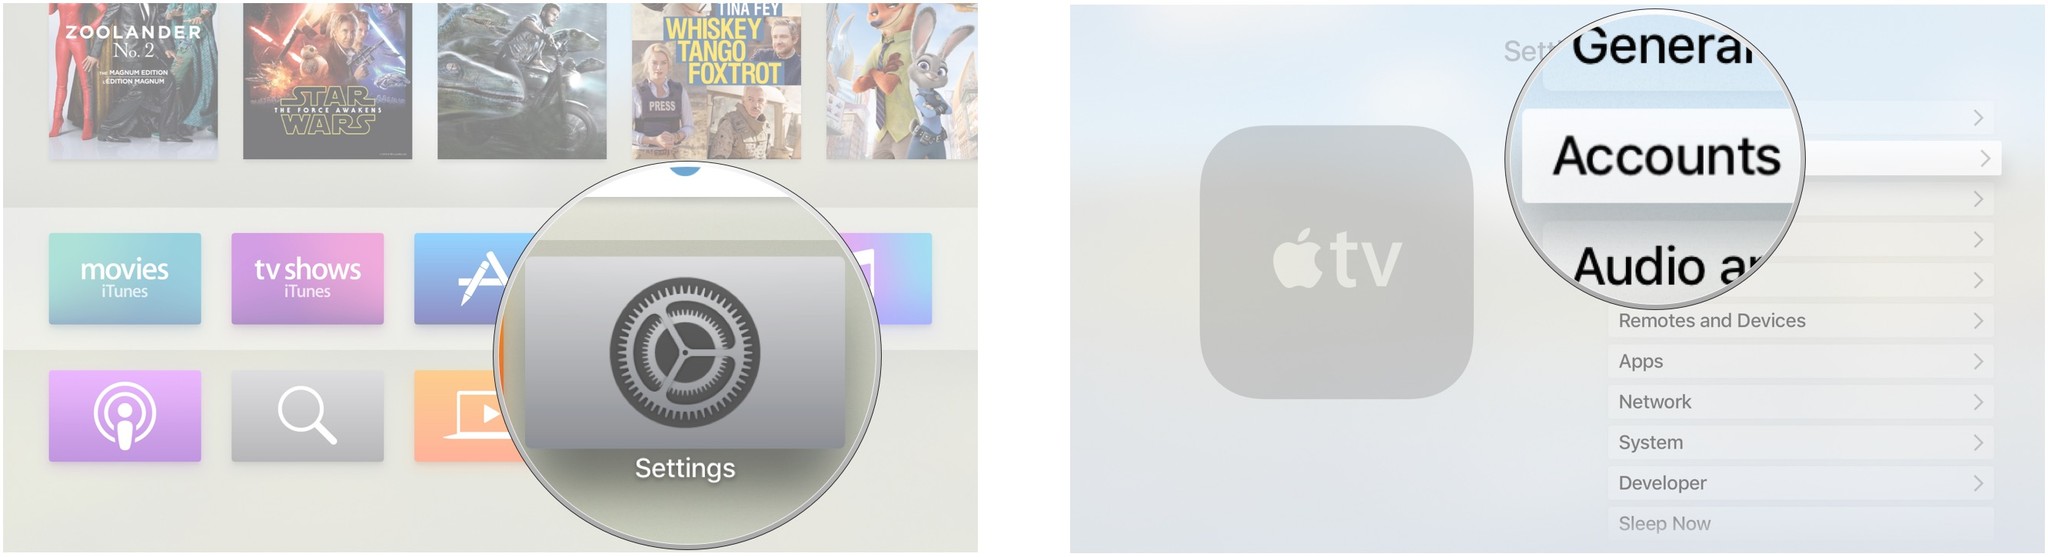 Выберите настройки на главном экране Apple TV, а затем выберите учетные записи.